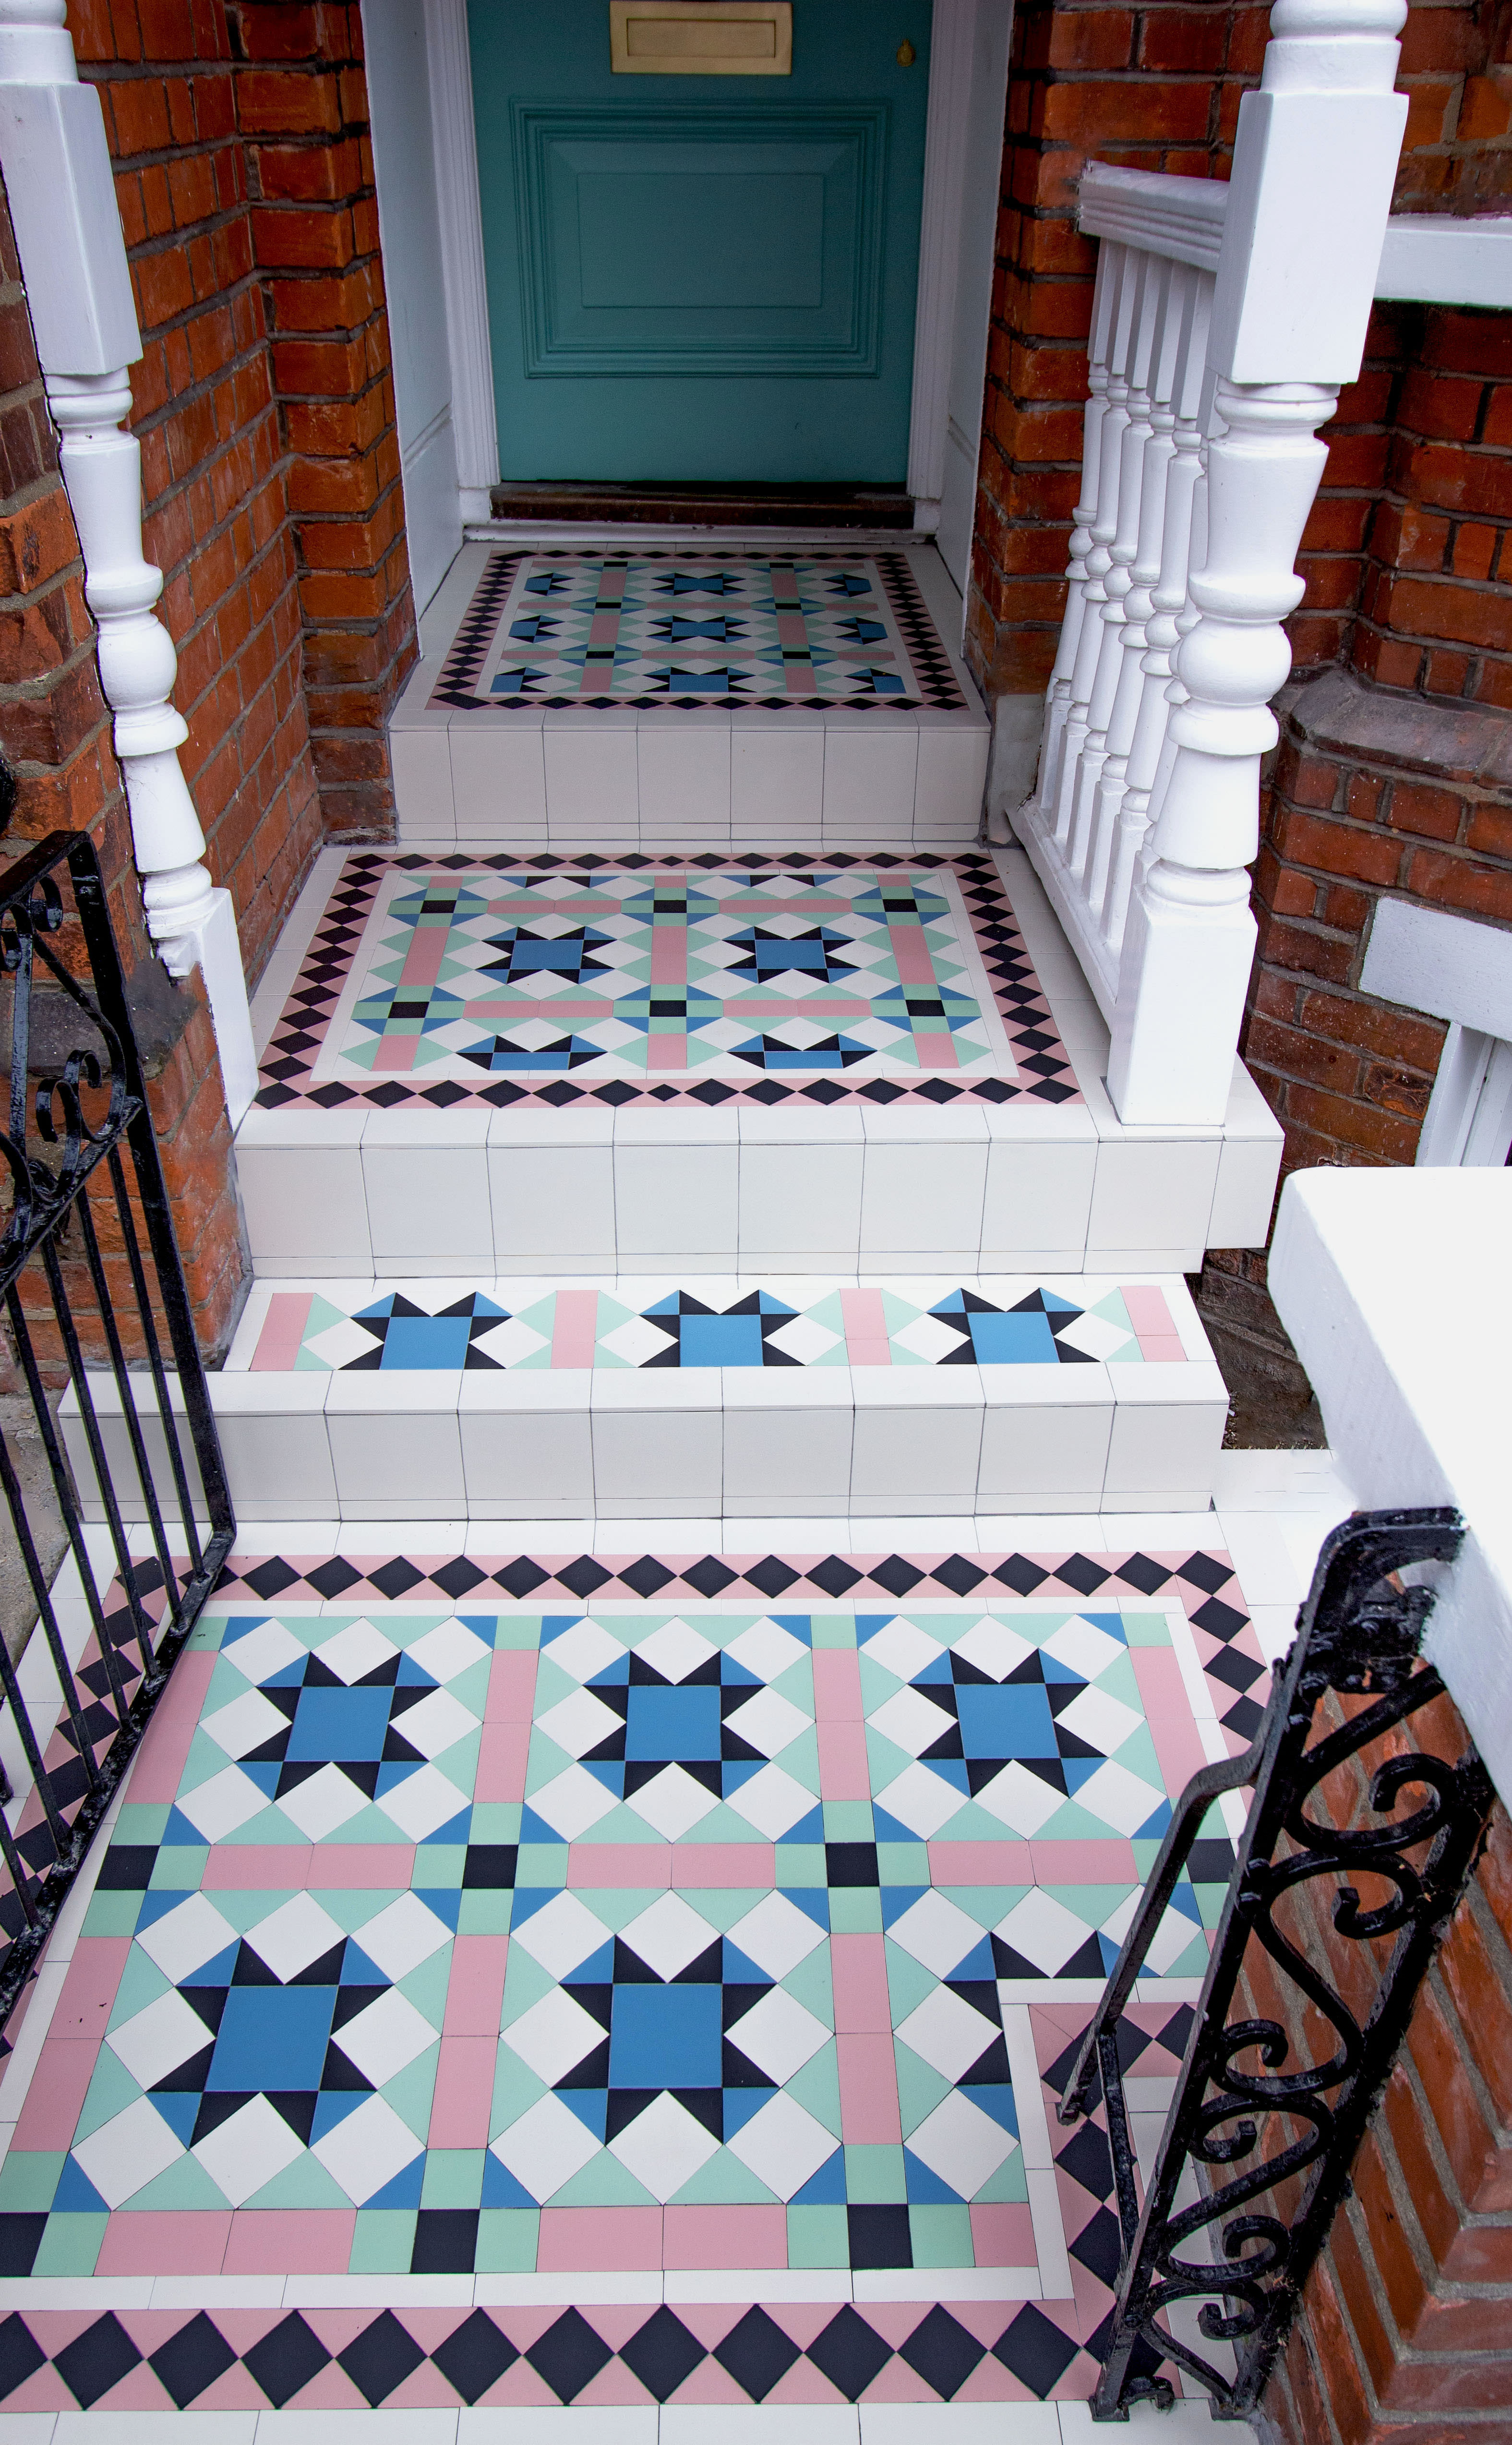 Victorian floor tiles